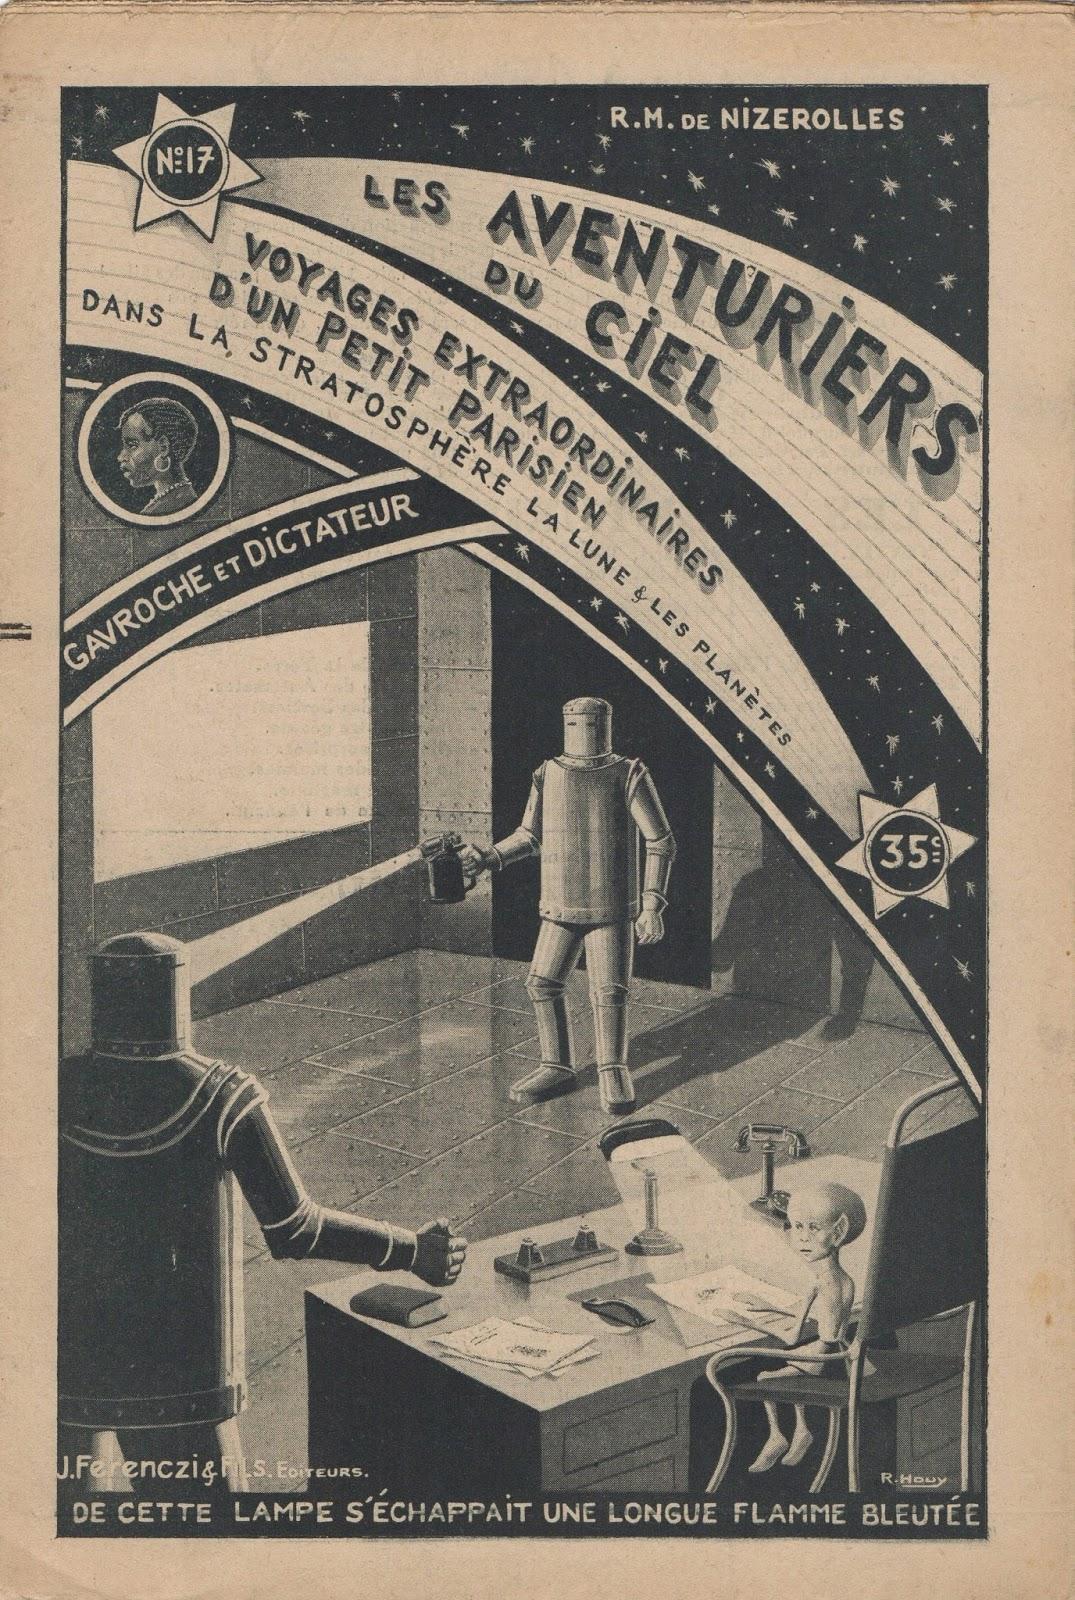 Les aventuriers du ciel : premier journal illustré de science-fiction français ?